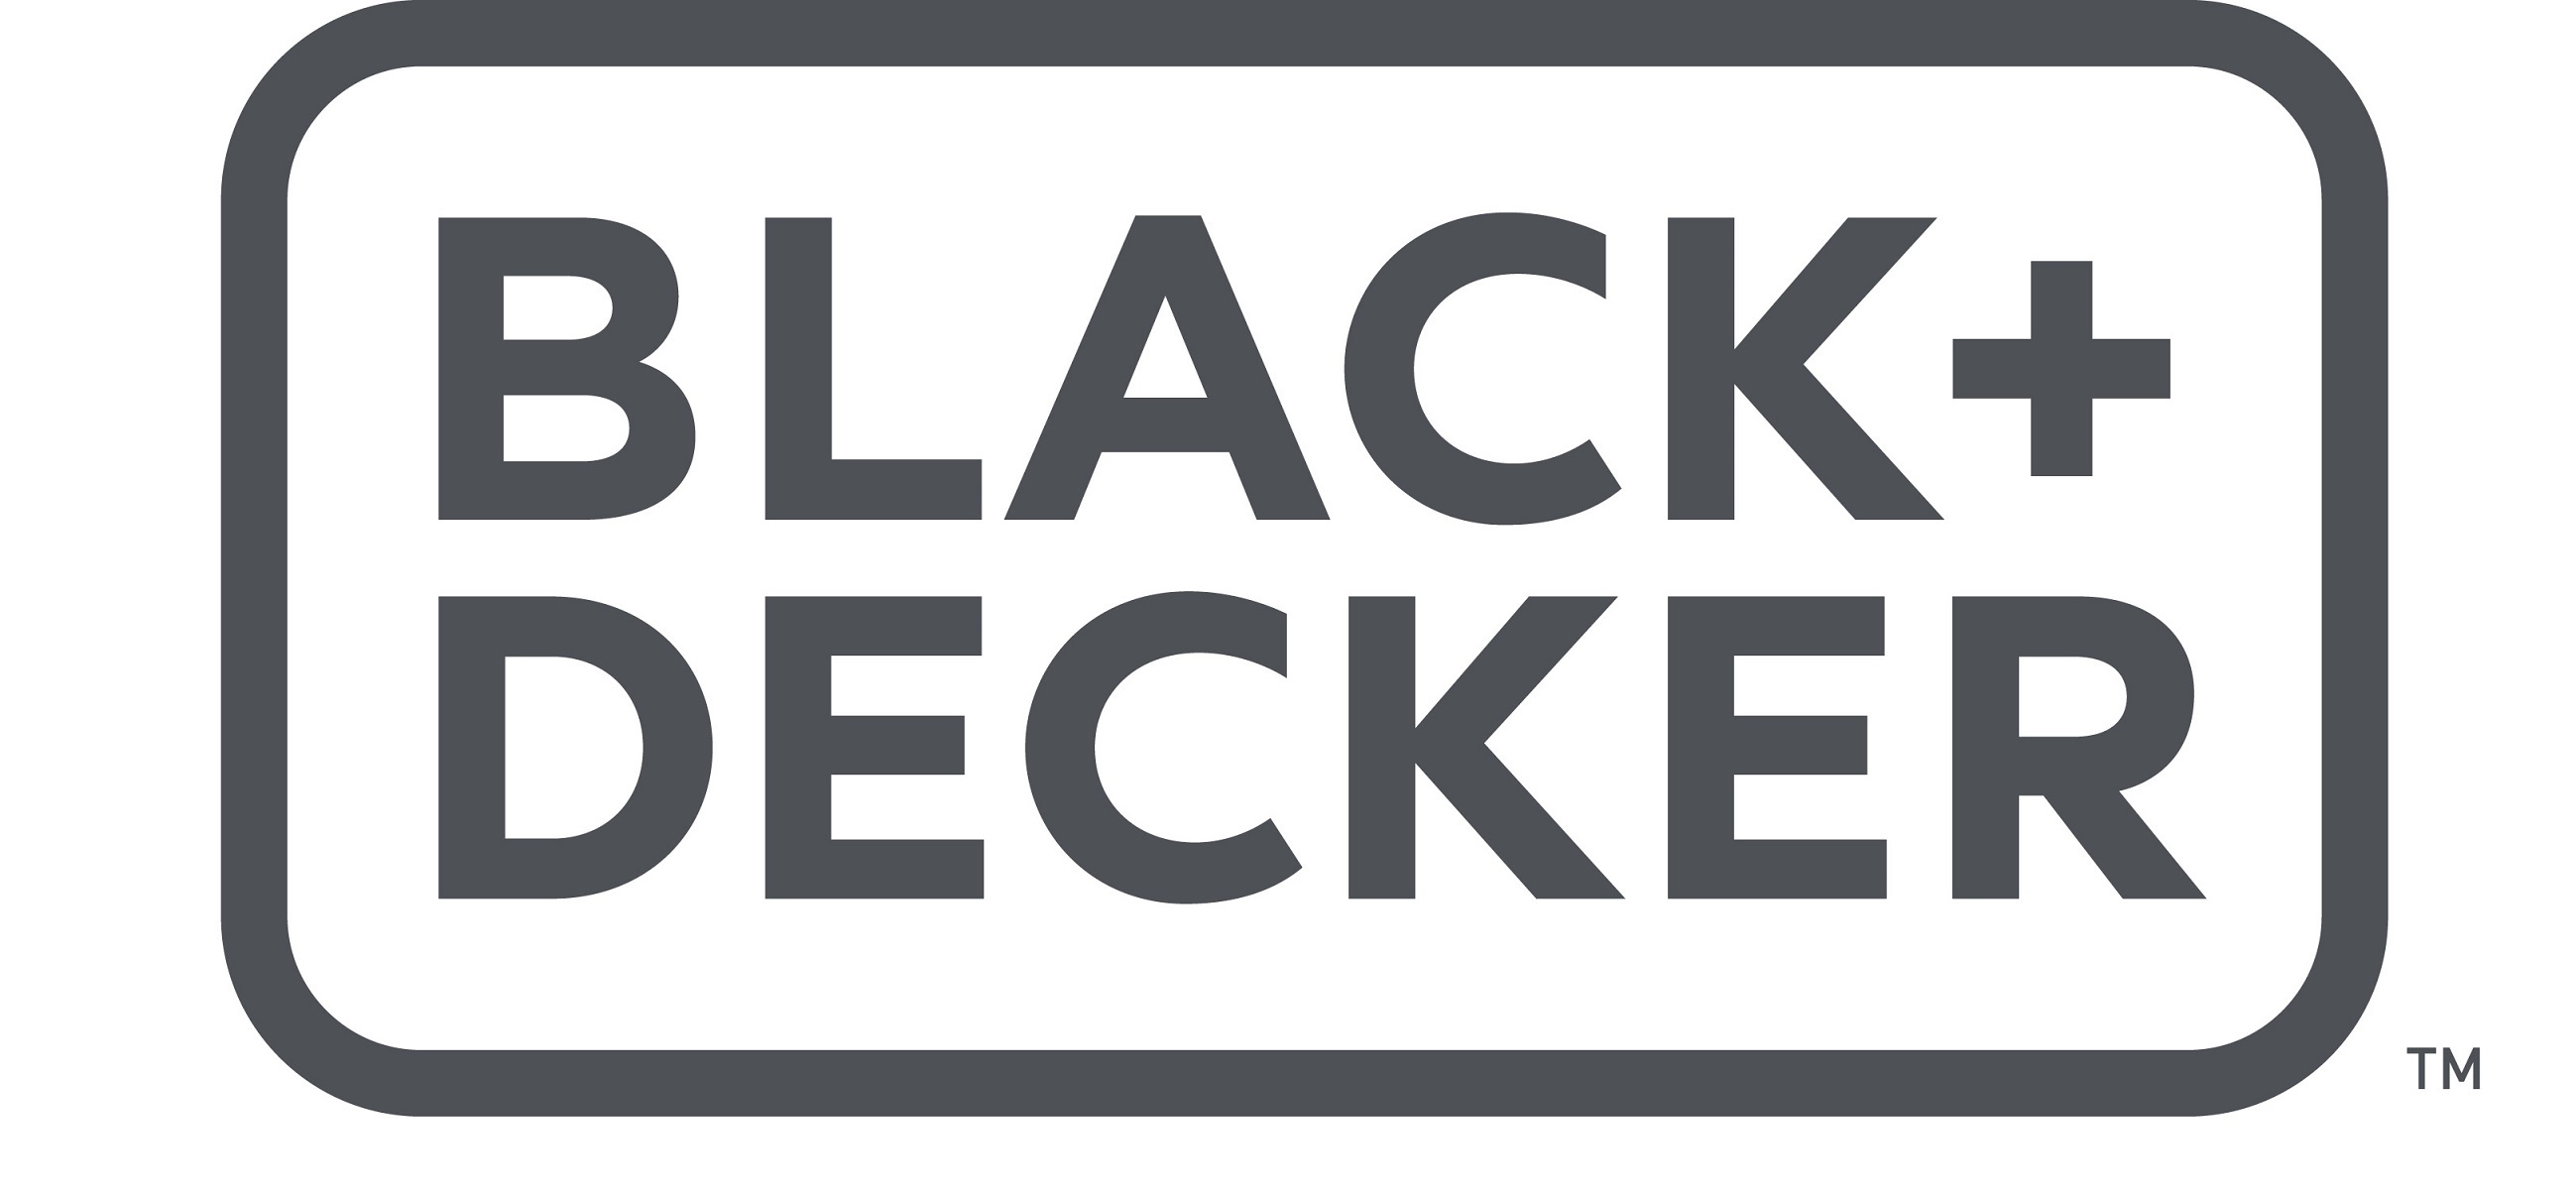 BLACK+DECKER Schlagbohrmaschine BEH550-QS